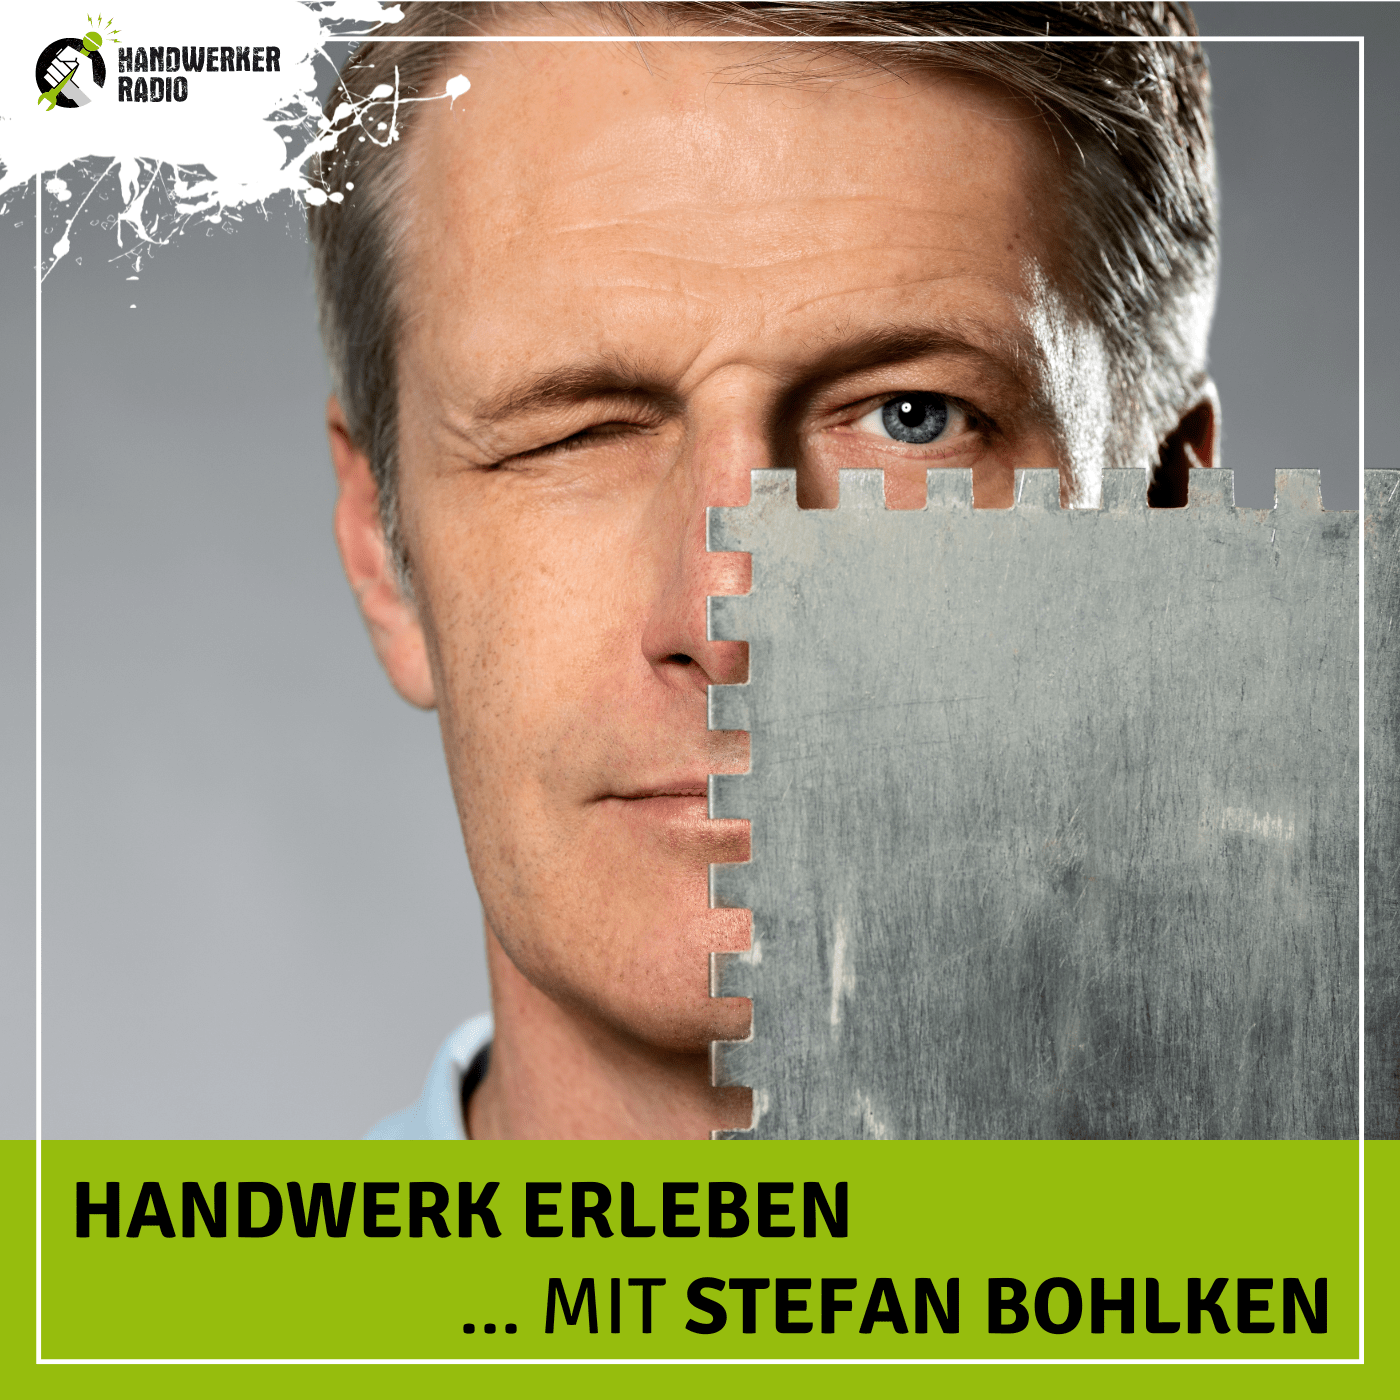 #82 Stefan Bohlken, welche Bedeutung hat für dich ein Meistertitel im Handwerk?